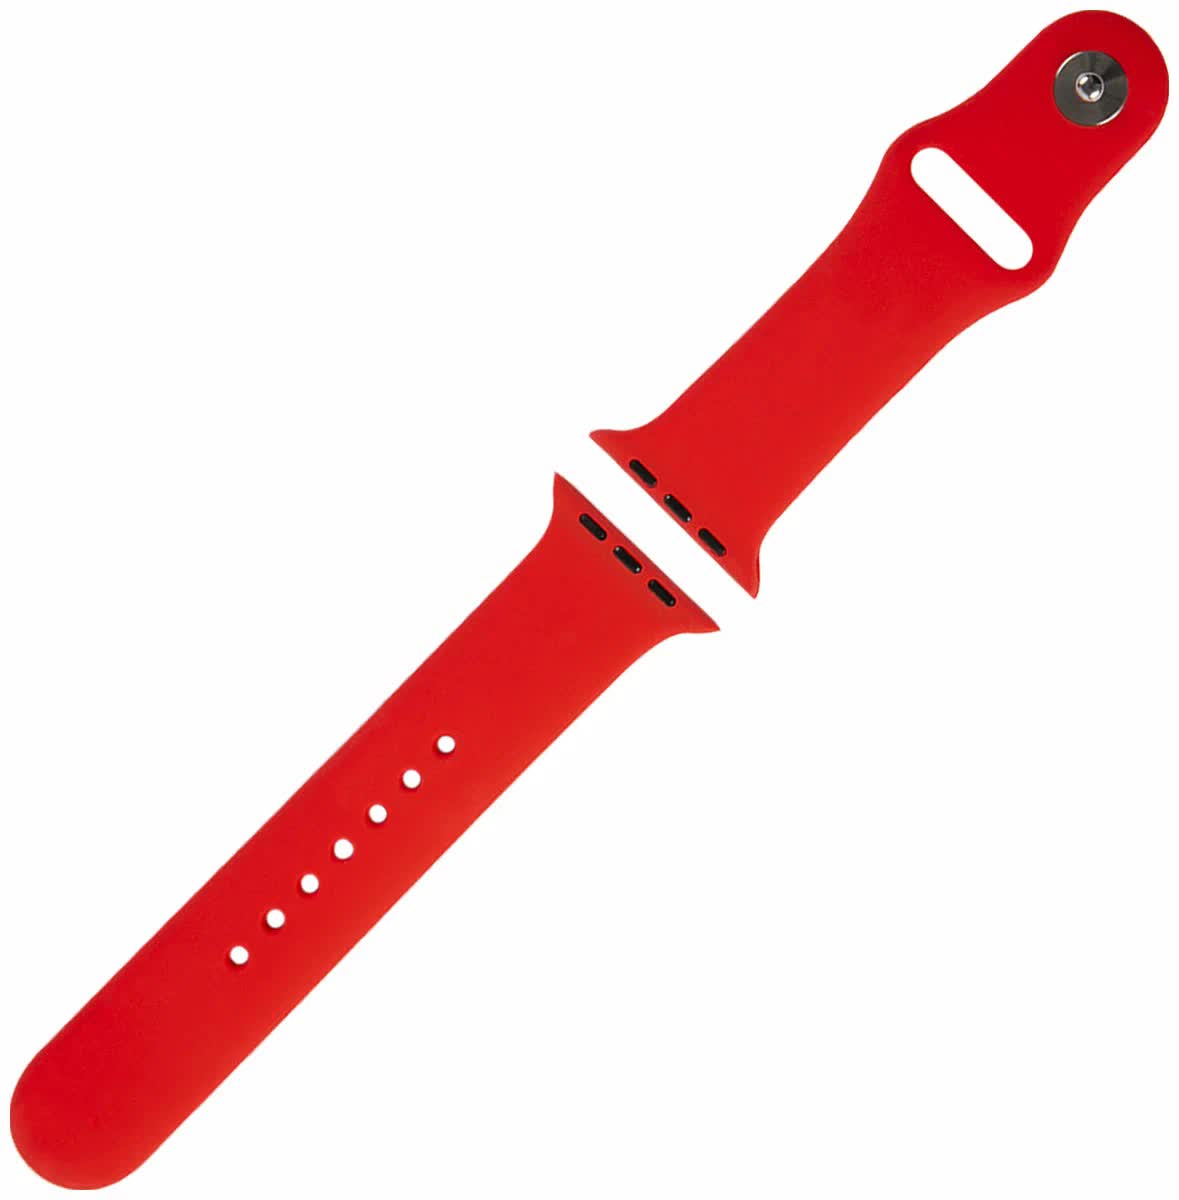 Ремешок Red Line силиконовый для Apple Watch – 38/40 mm (S3/S4/S5/SE/S6), красный УТ000027228 ремешок red line силиконовый для apple watch – 38 40 mm s3 s4 s5 se s6 черный ут000027226